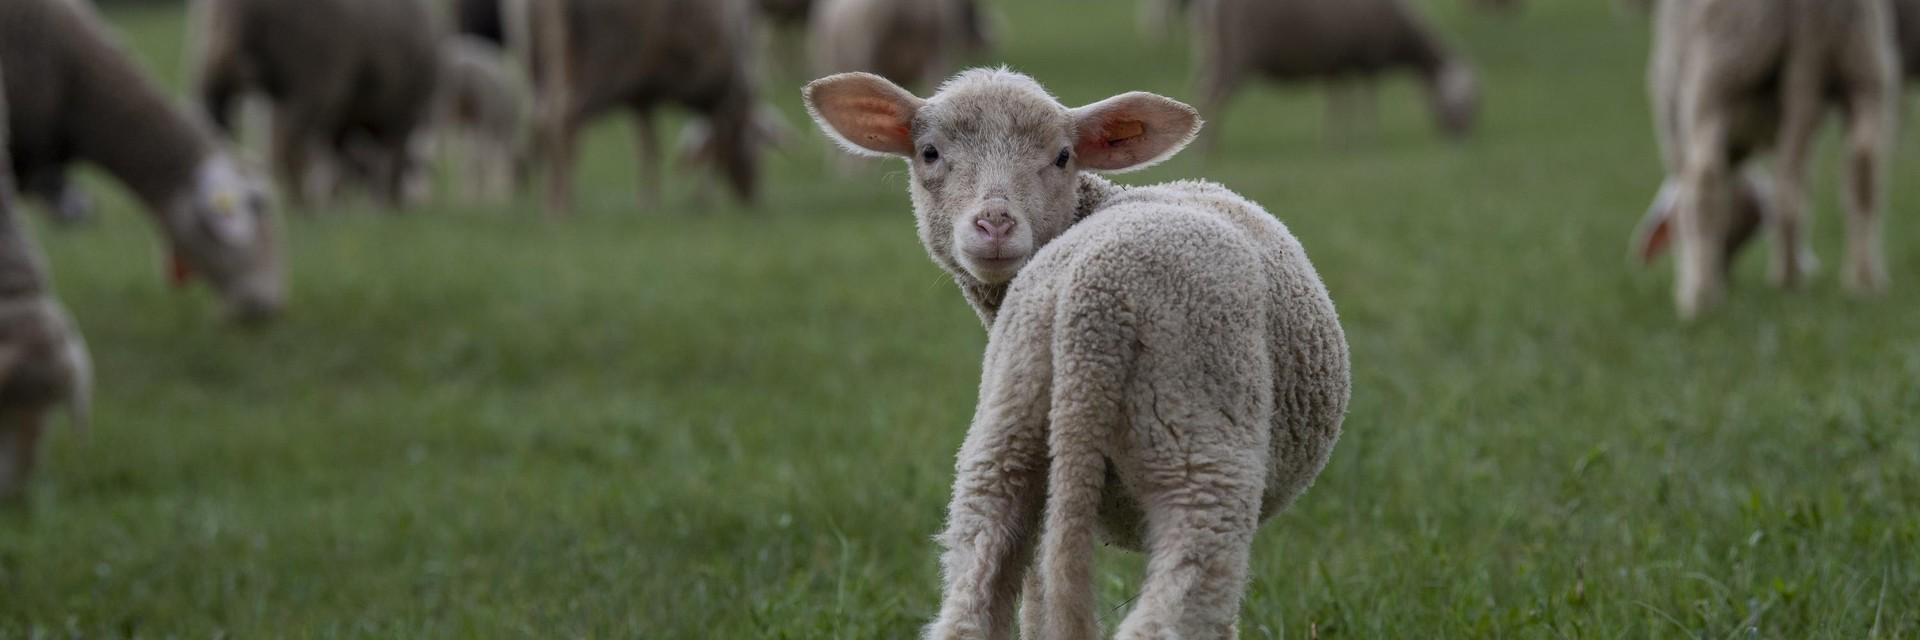 Lamb on a field